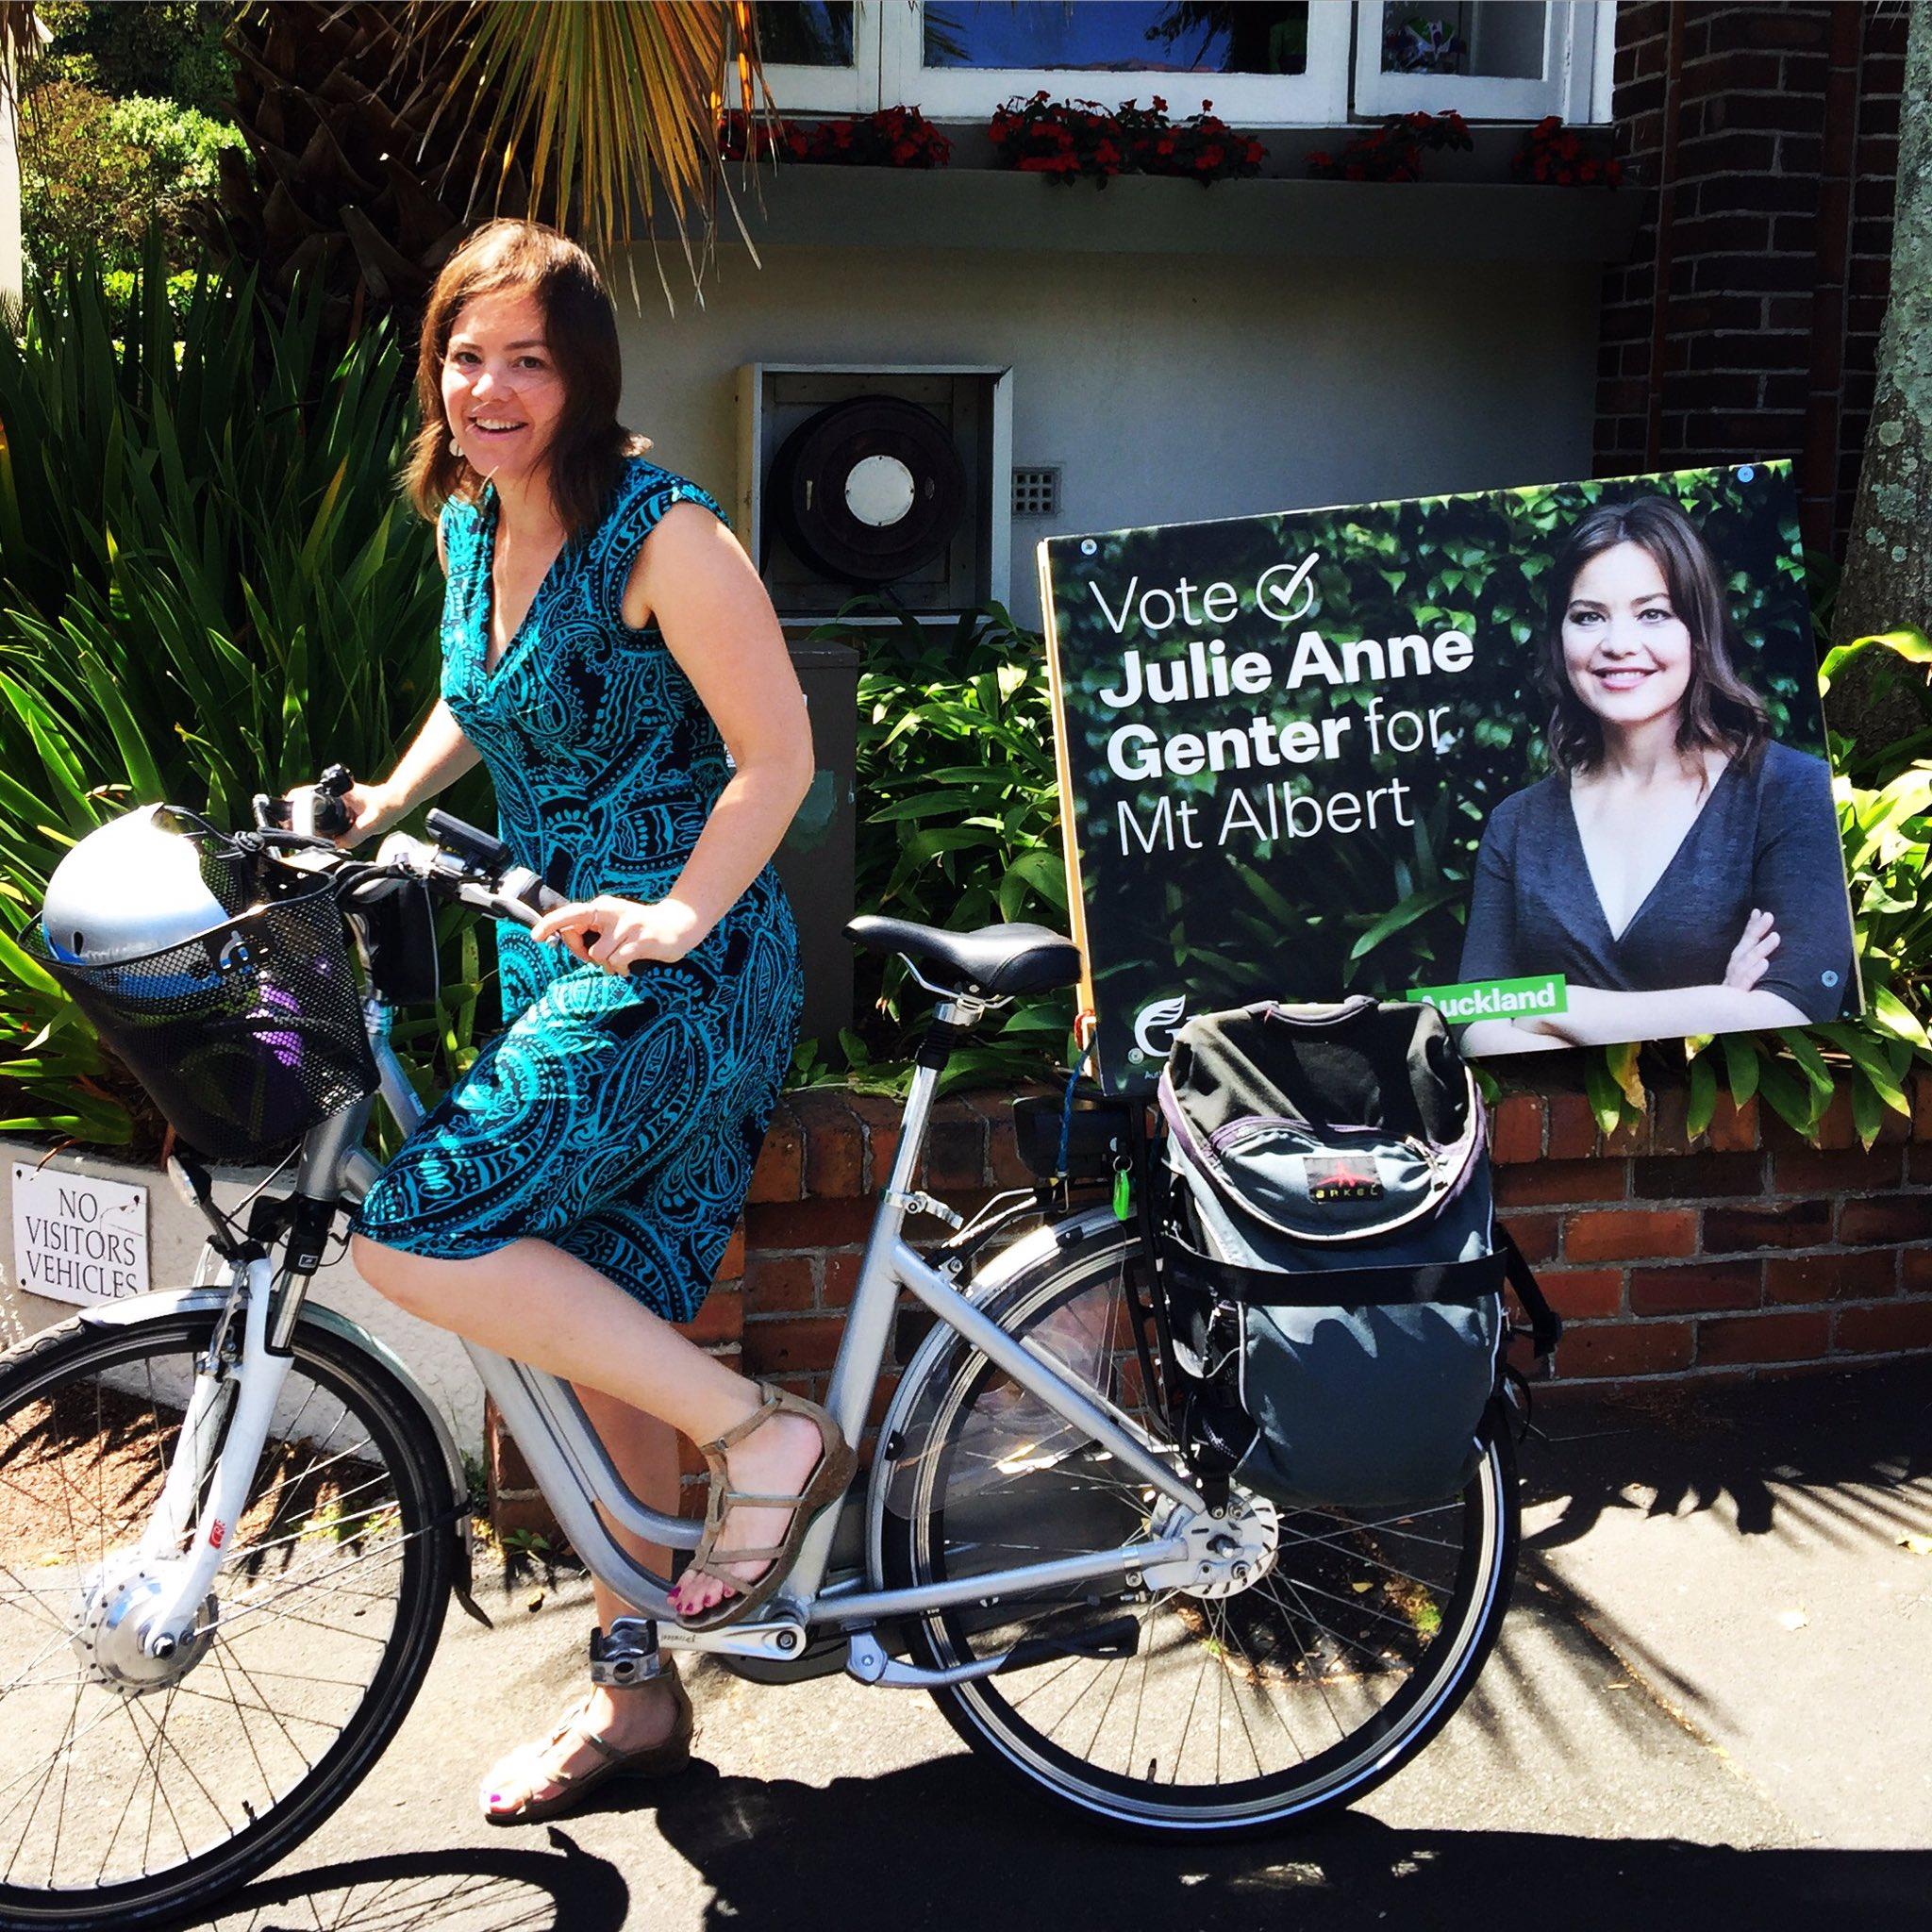 النائبة النيوزيلاندية جولي آن جينتر تقود دراجتها في الشارع خلال حملتها الانتخابية، وتضع على الدراجة لافتة مكتوب عليها "صوتوا لجولي آن جينتر"